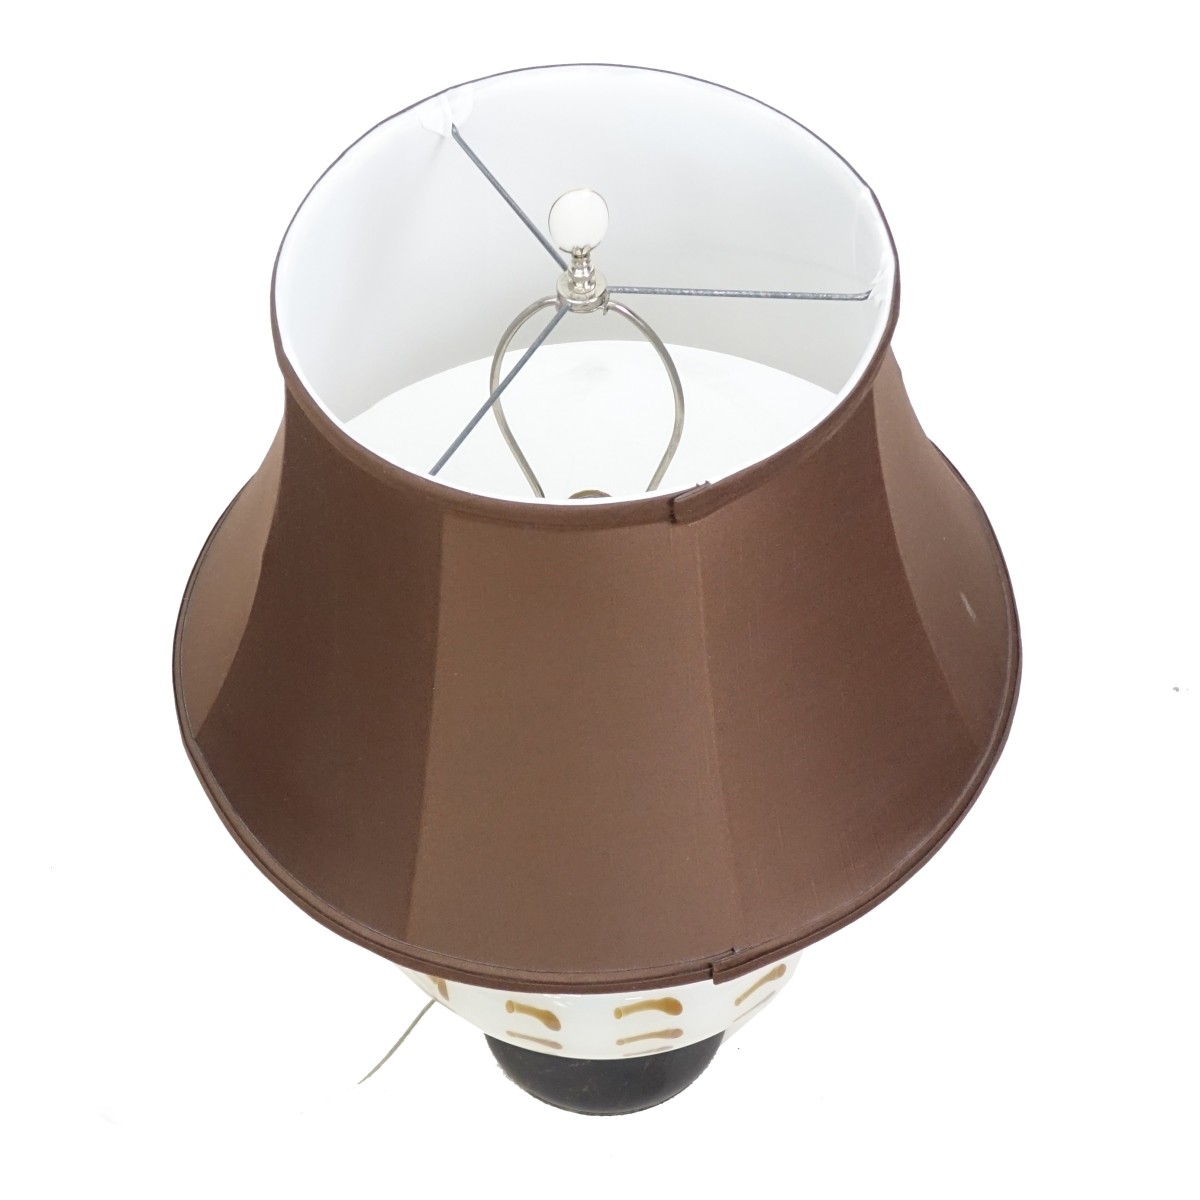 Murano Style Lamp